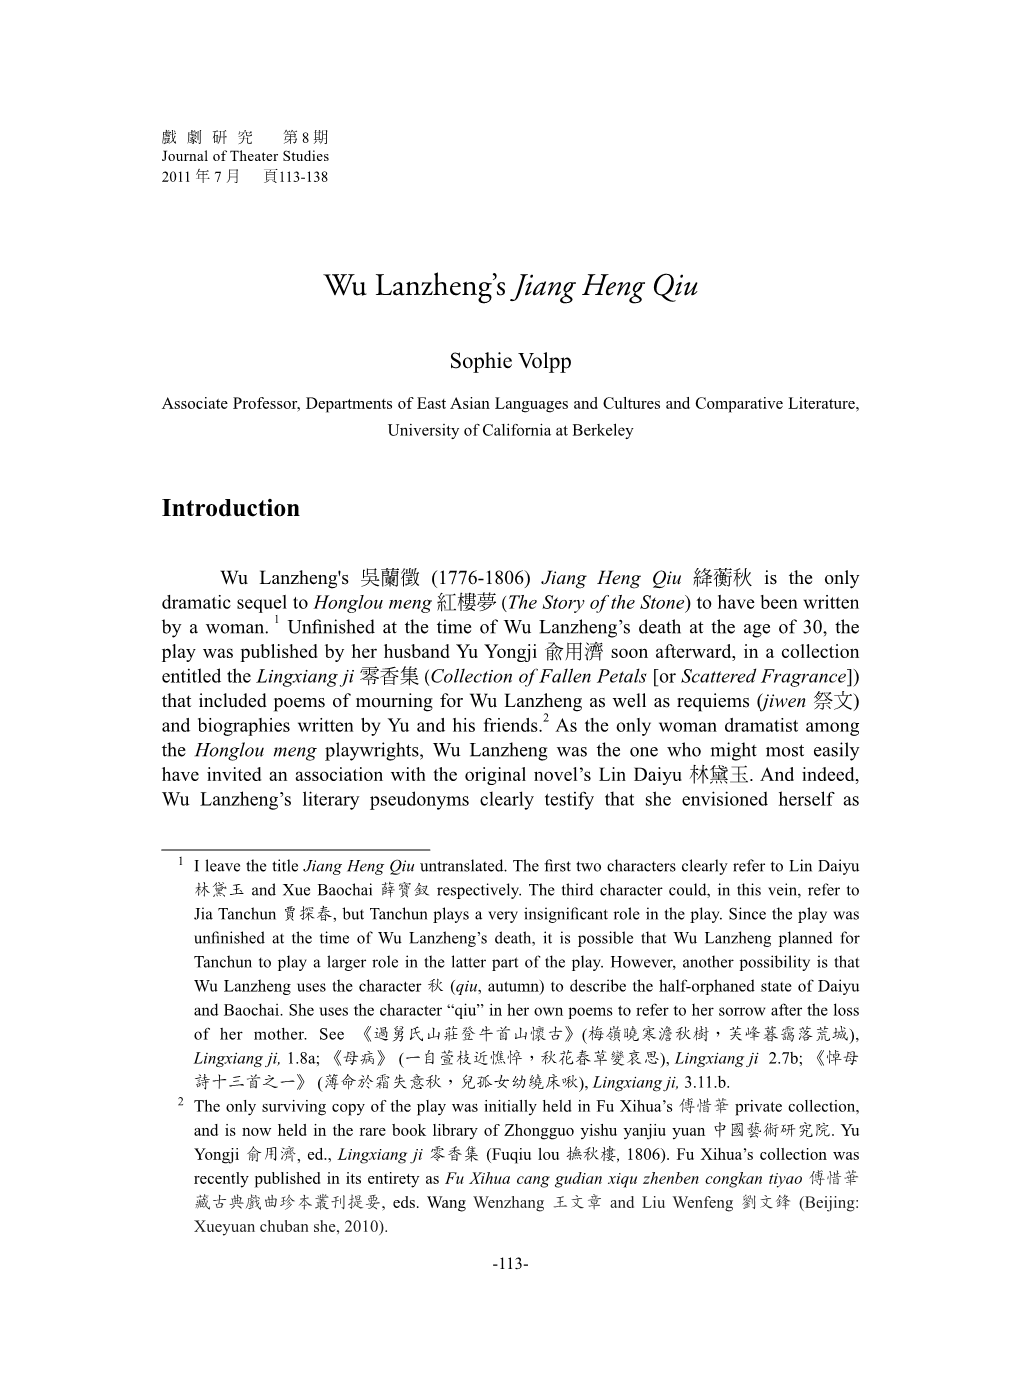 Wu Lanzheng's Jiang Heng